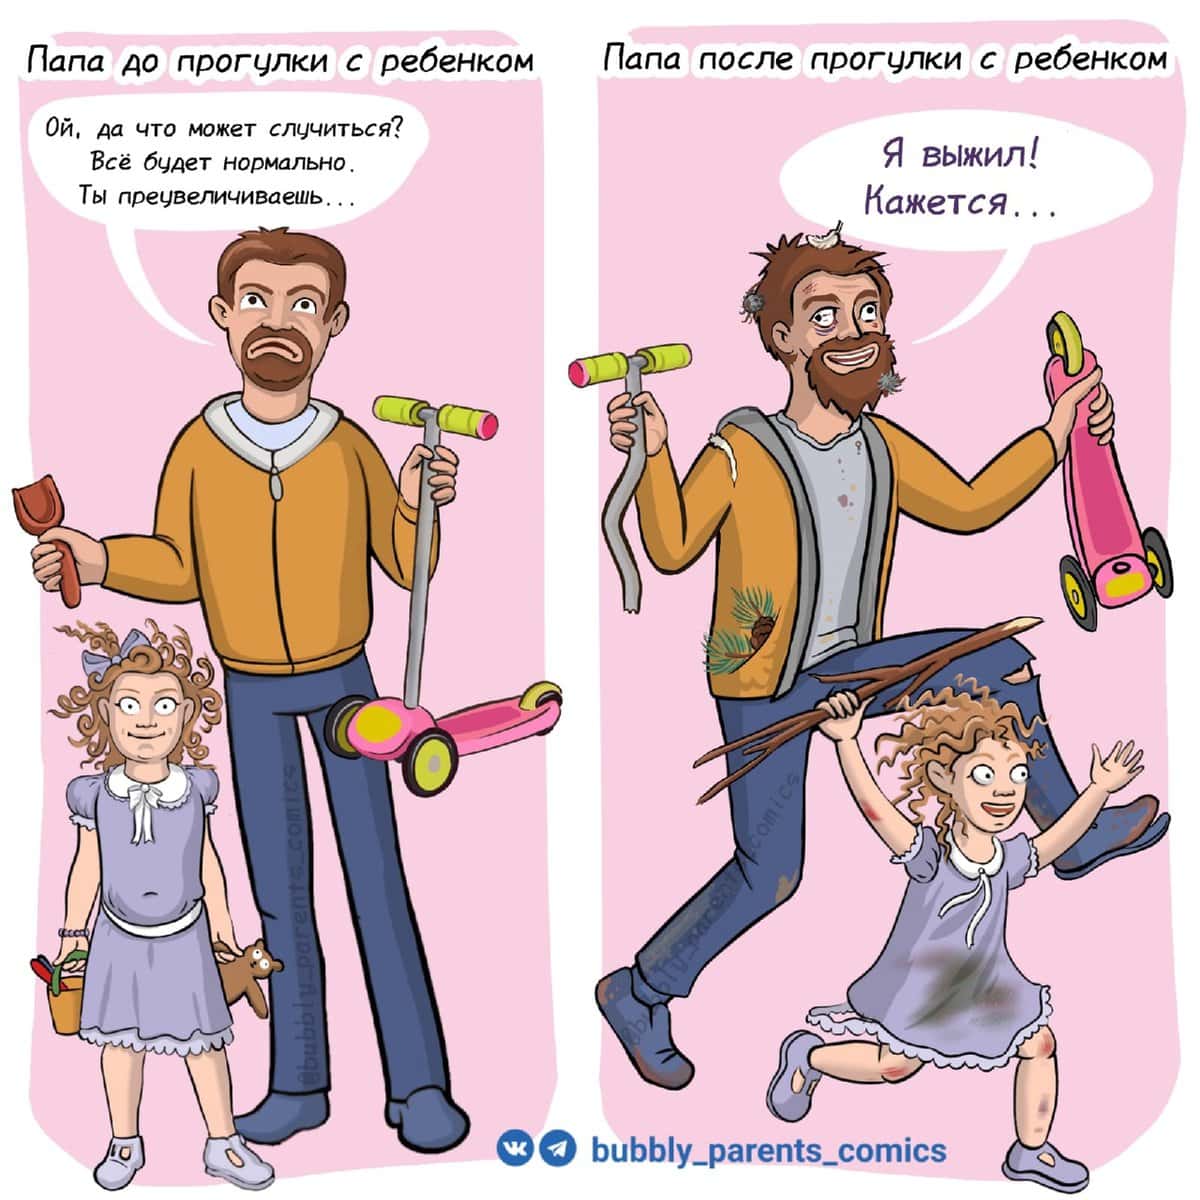 15 смешных комиксов от художницы из Екатеринбурга, которая делится своим «щщастьем материнства» в картинках 58